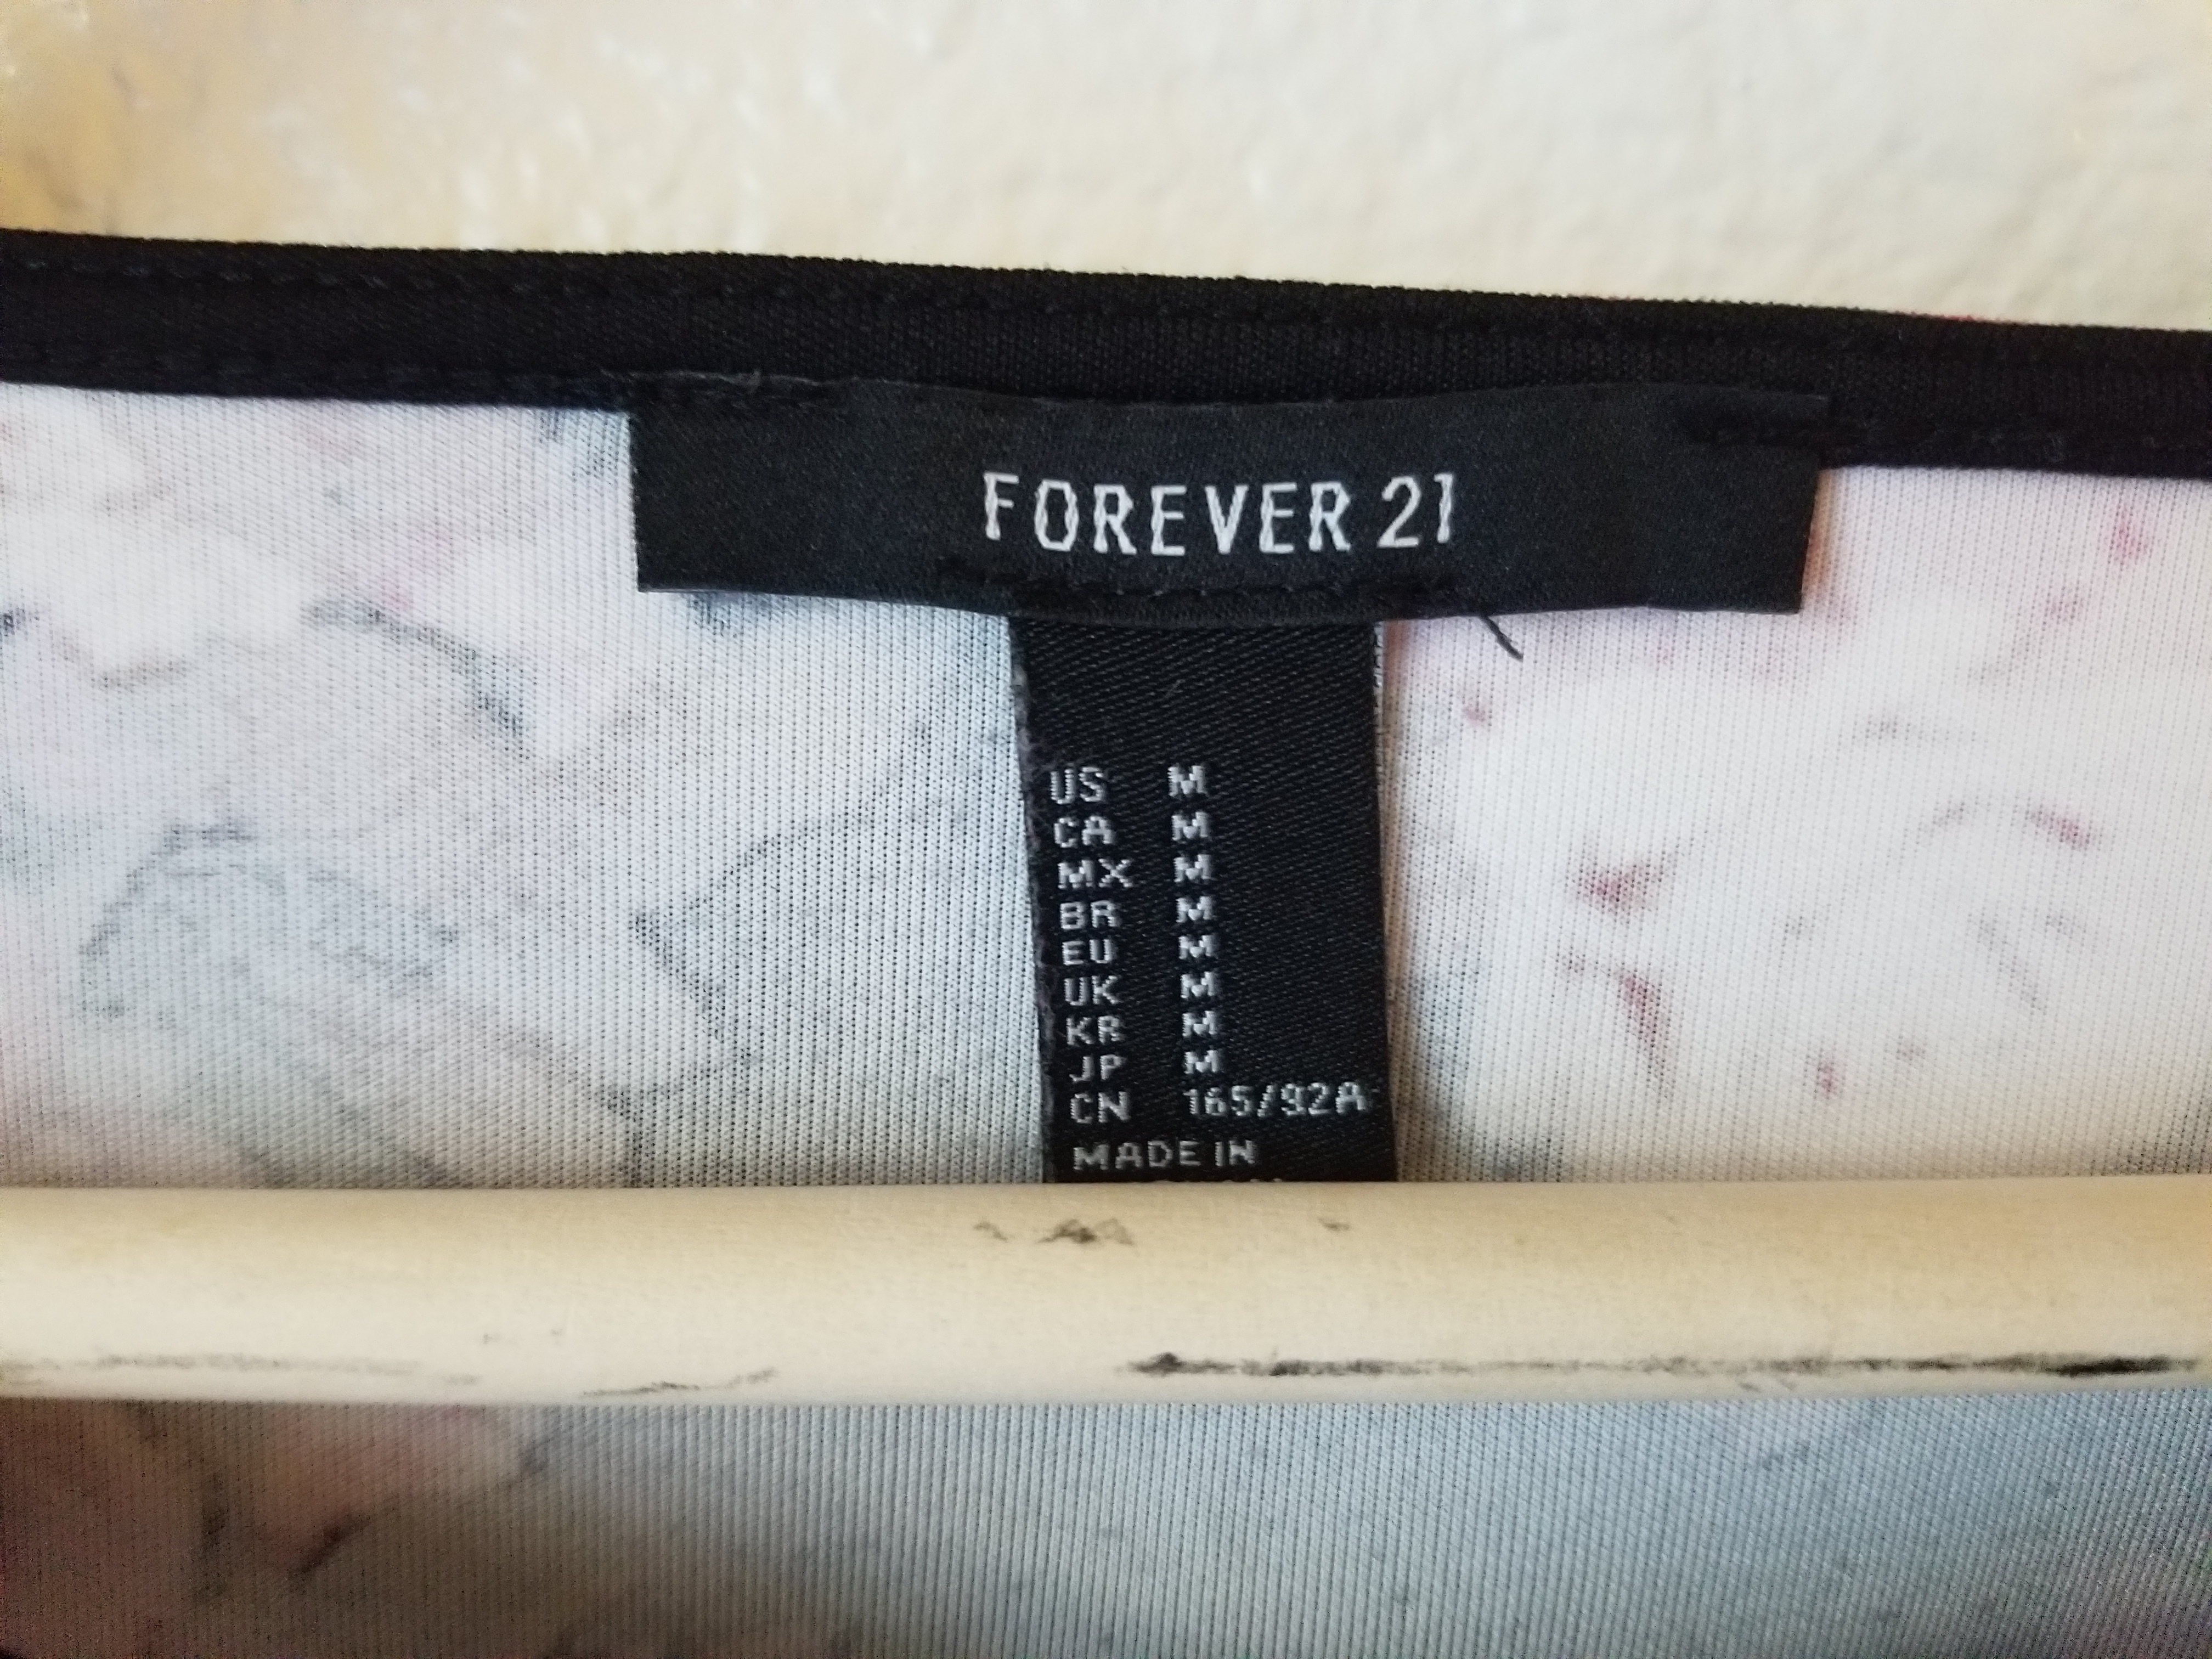 32 Forever 21 Return Label - Labels Database 2020